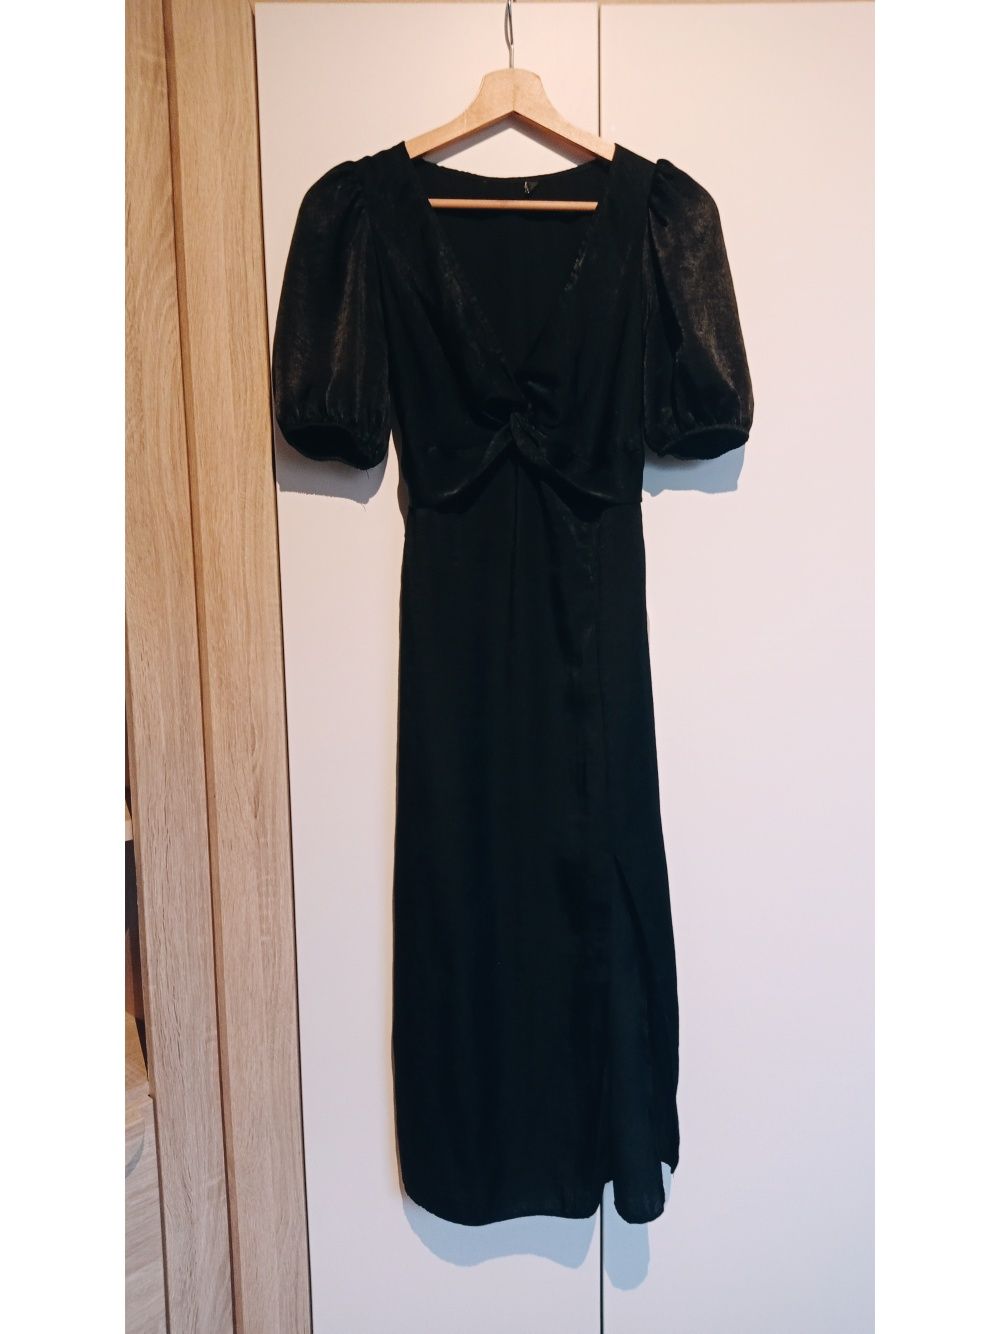 ASOS / Czarna sukienka vneck z rozcięciem na nodze / XS 34